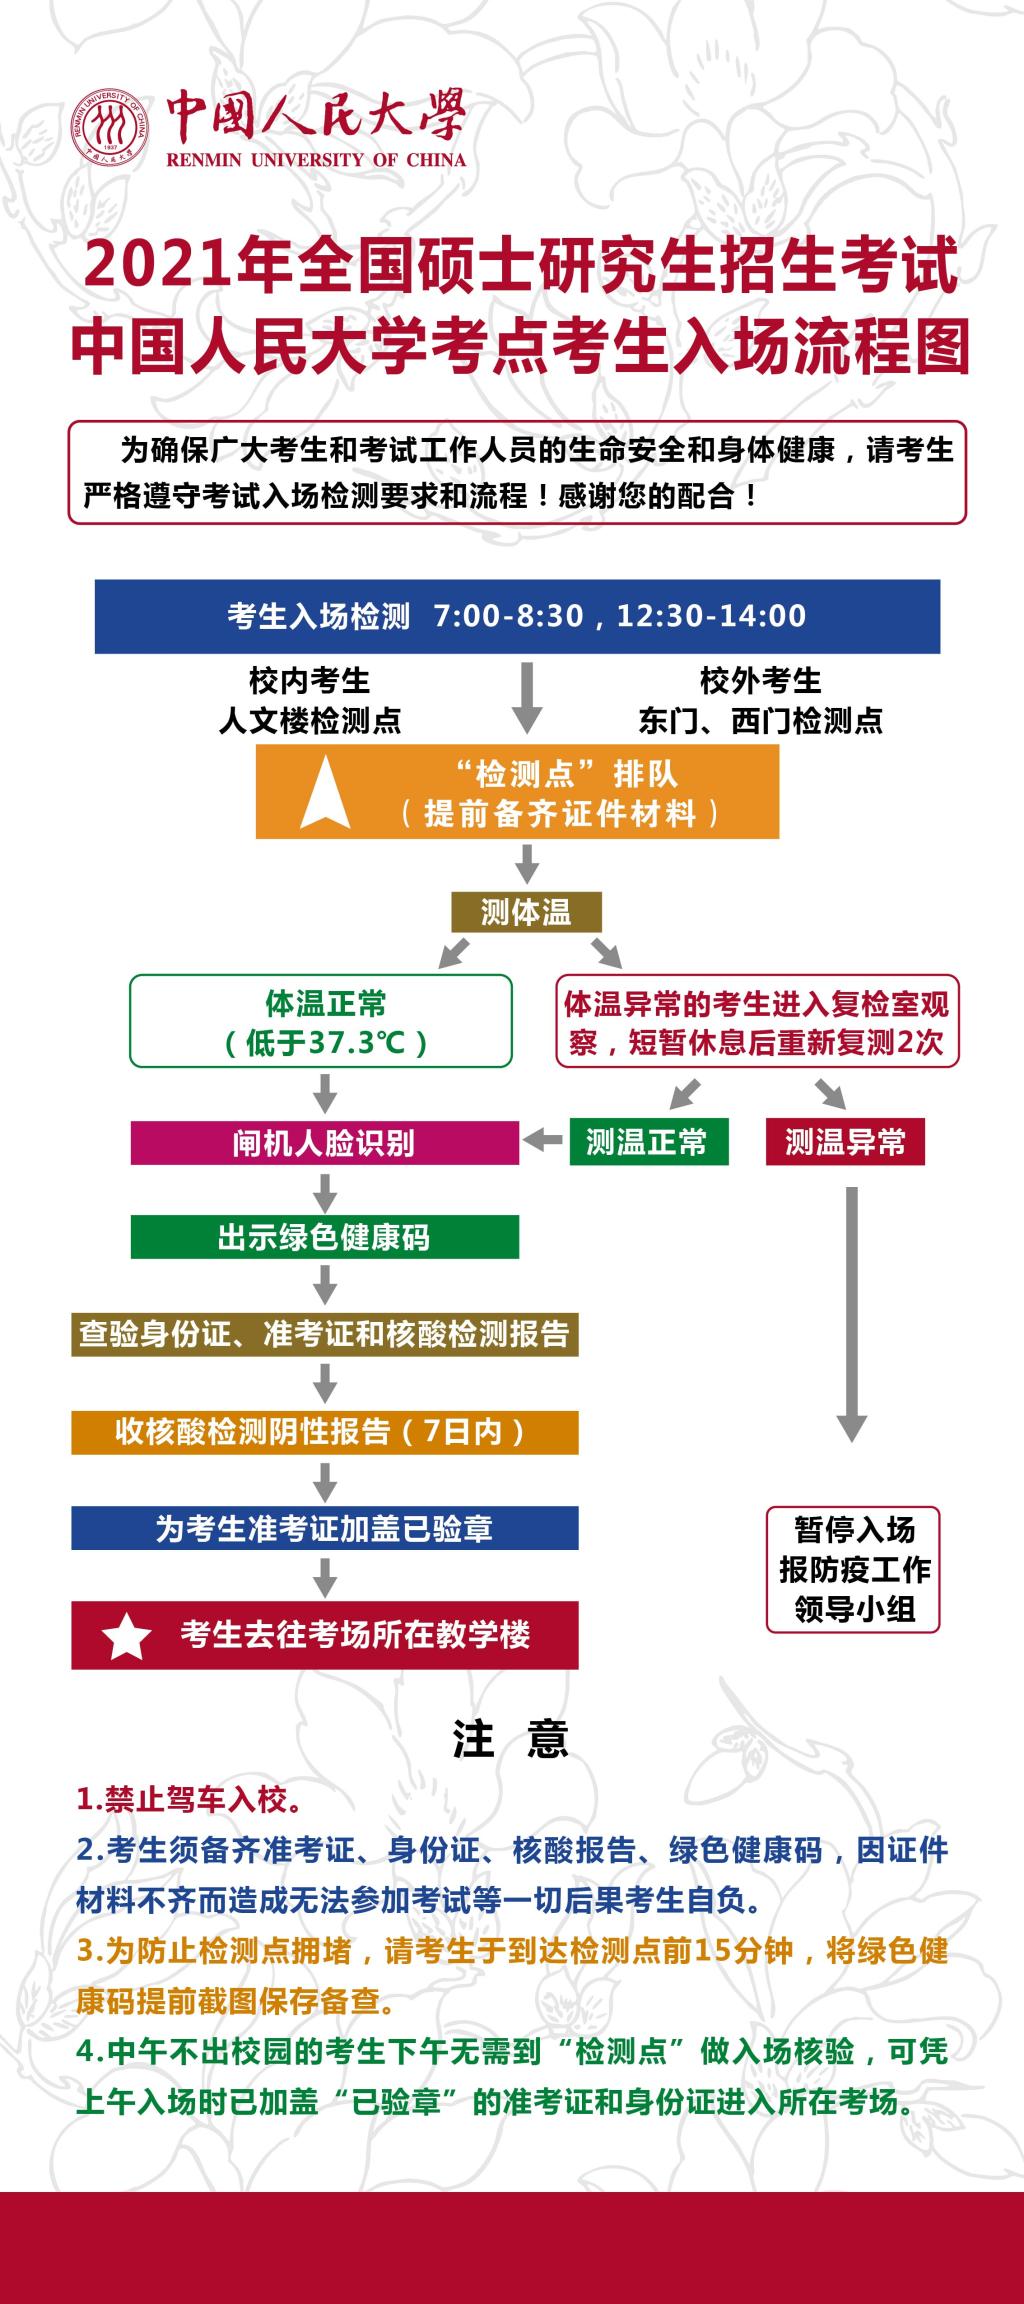 中国人民大学2021年全国硕士研究生招生考试入场流程图